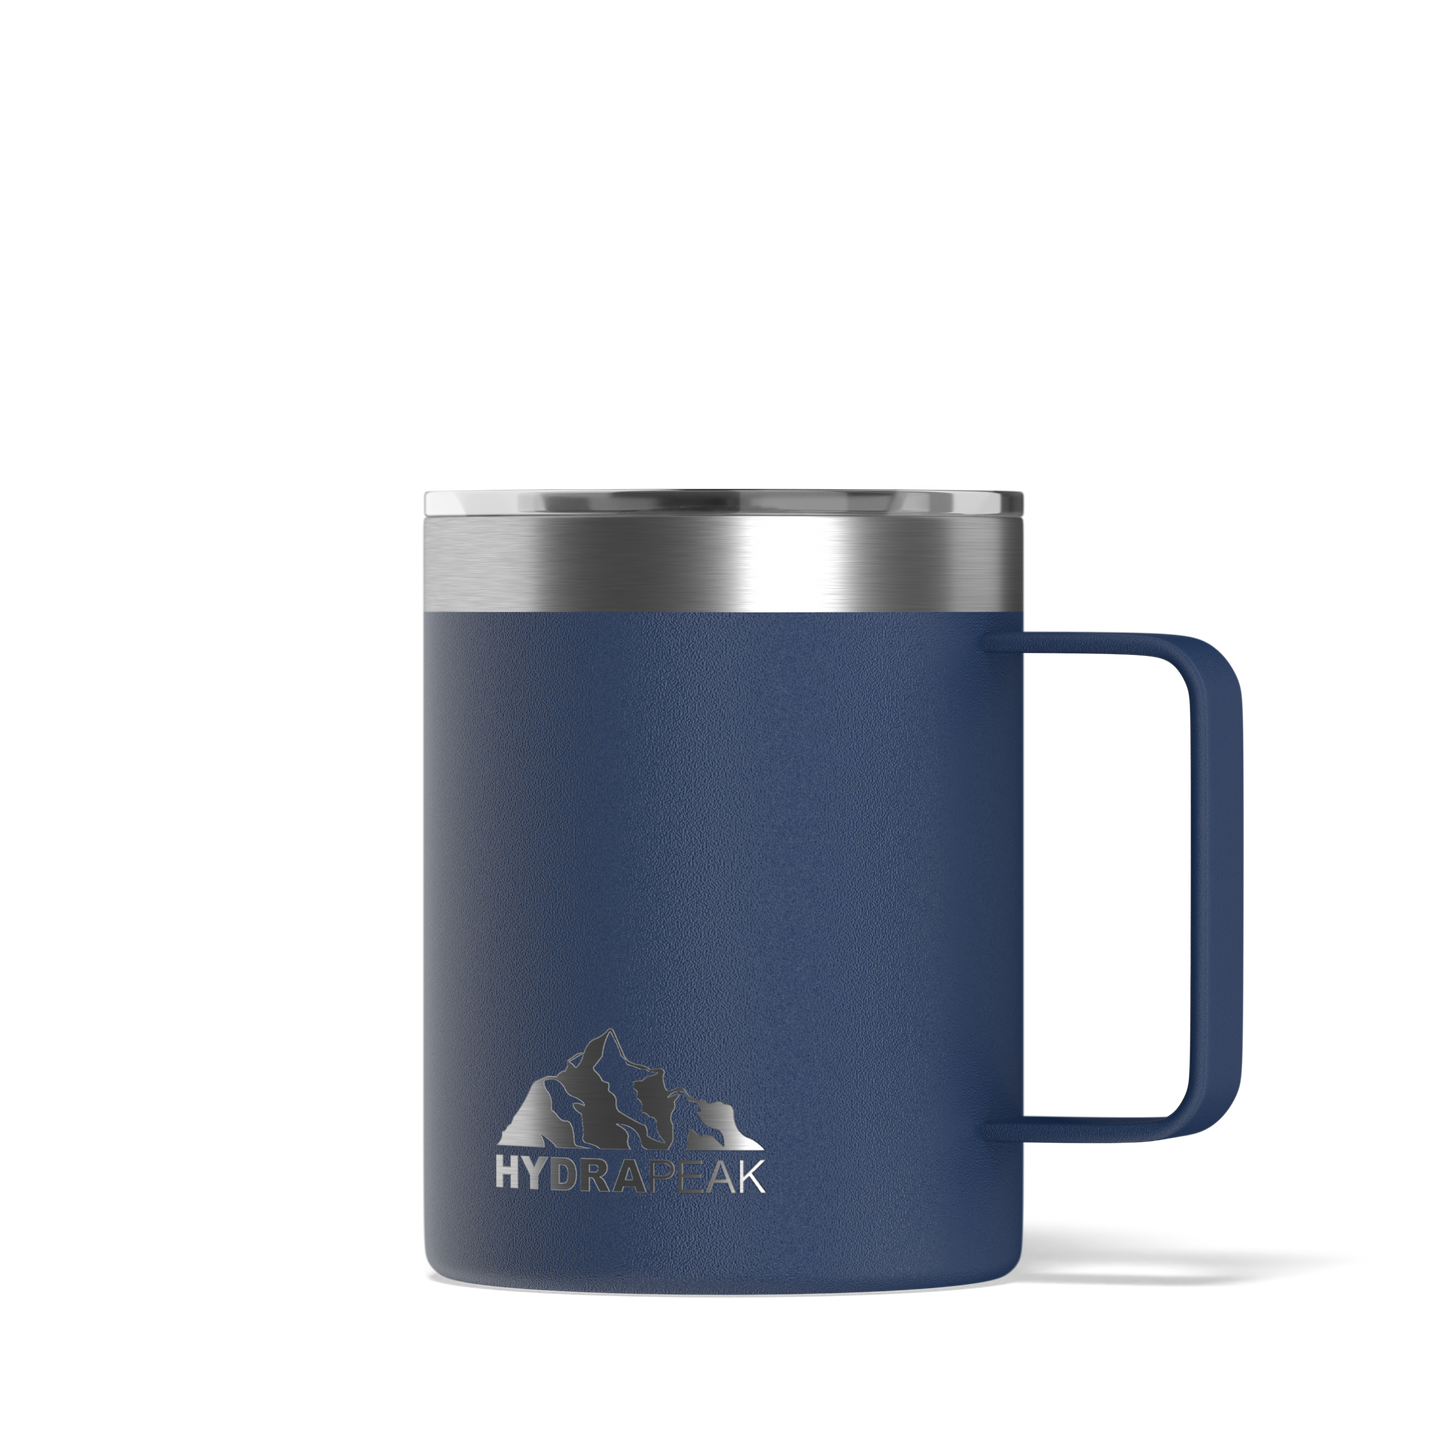 Savor 14oz Stainless Steel Insulated Coffee Mug with Handle Mug - Cobalt